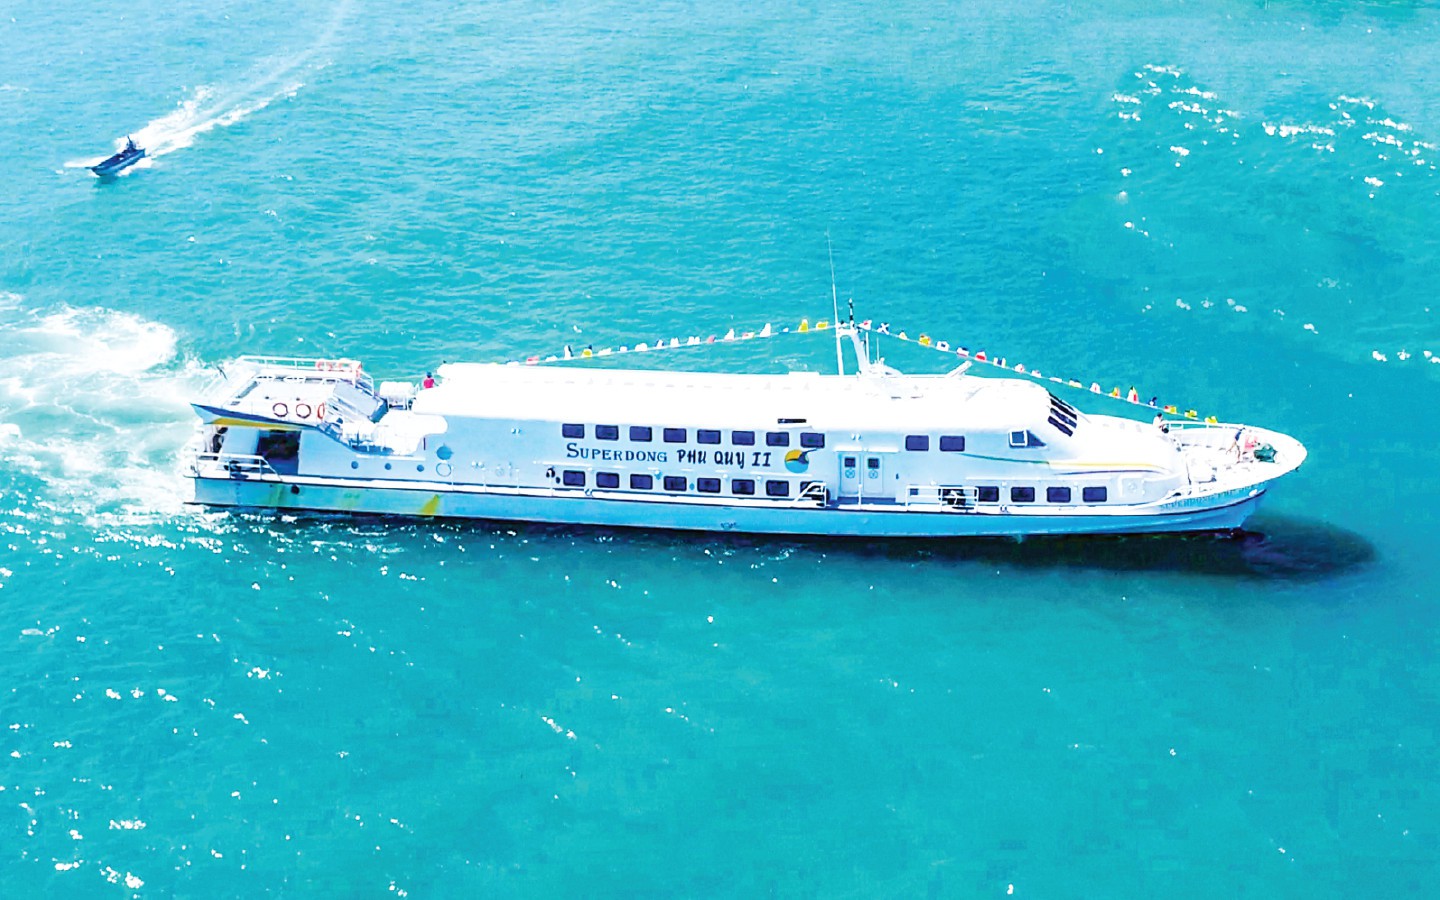 Cạnh tranh gay gắt, hãng tàu chuyên chở khách ra đảo Phú Quốc, Côn Đảo, Phú Quý báo lãi quý 1 giảm 40%